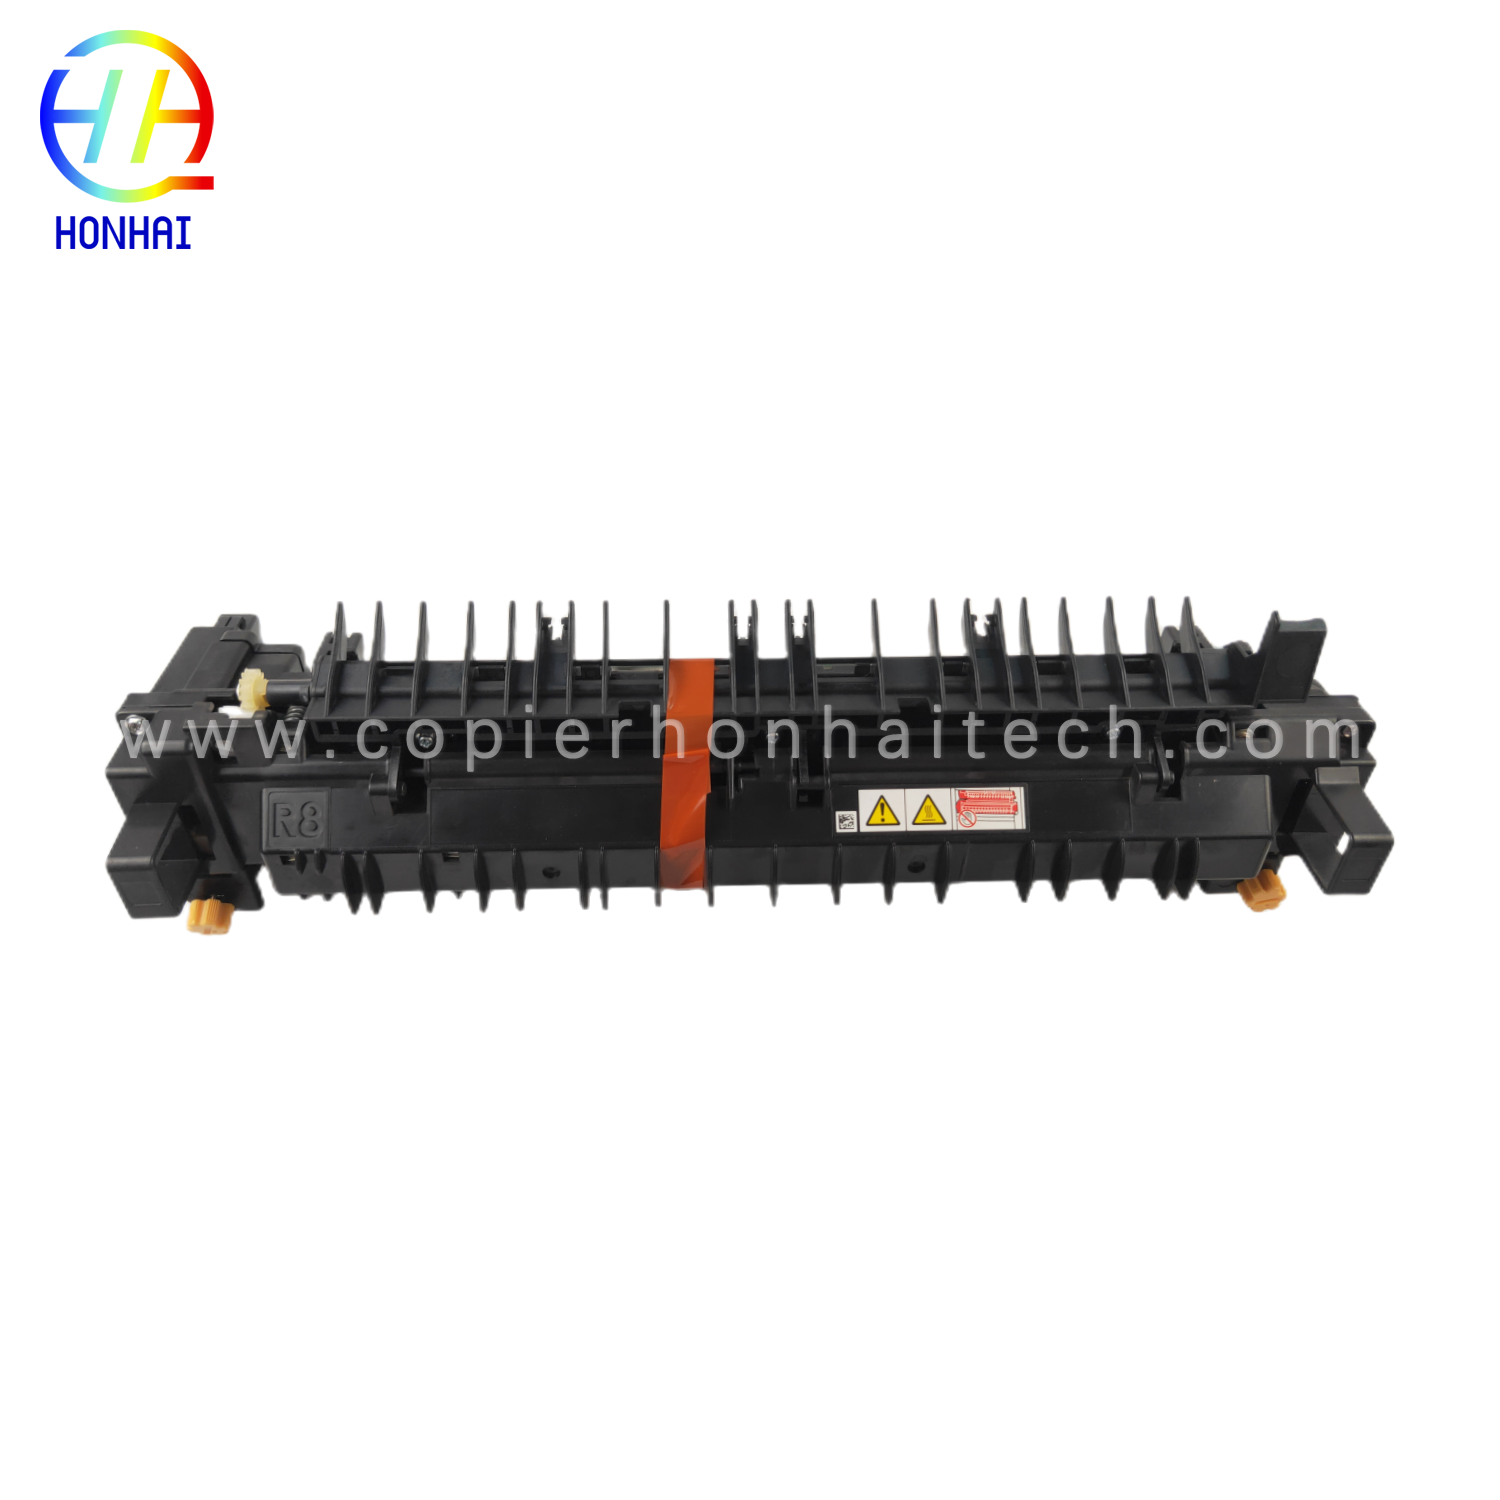 https://www.copierhonhaitech.com/fuser-unit-220v-for-xerox-versalink-c7020-c7025-c7030-fuser-fixing-unit-product/